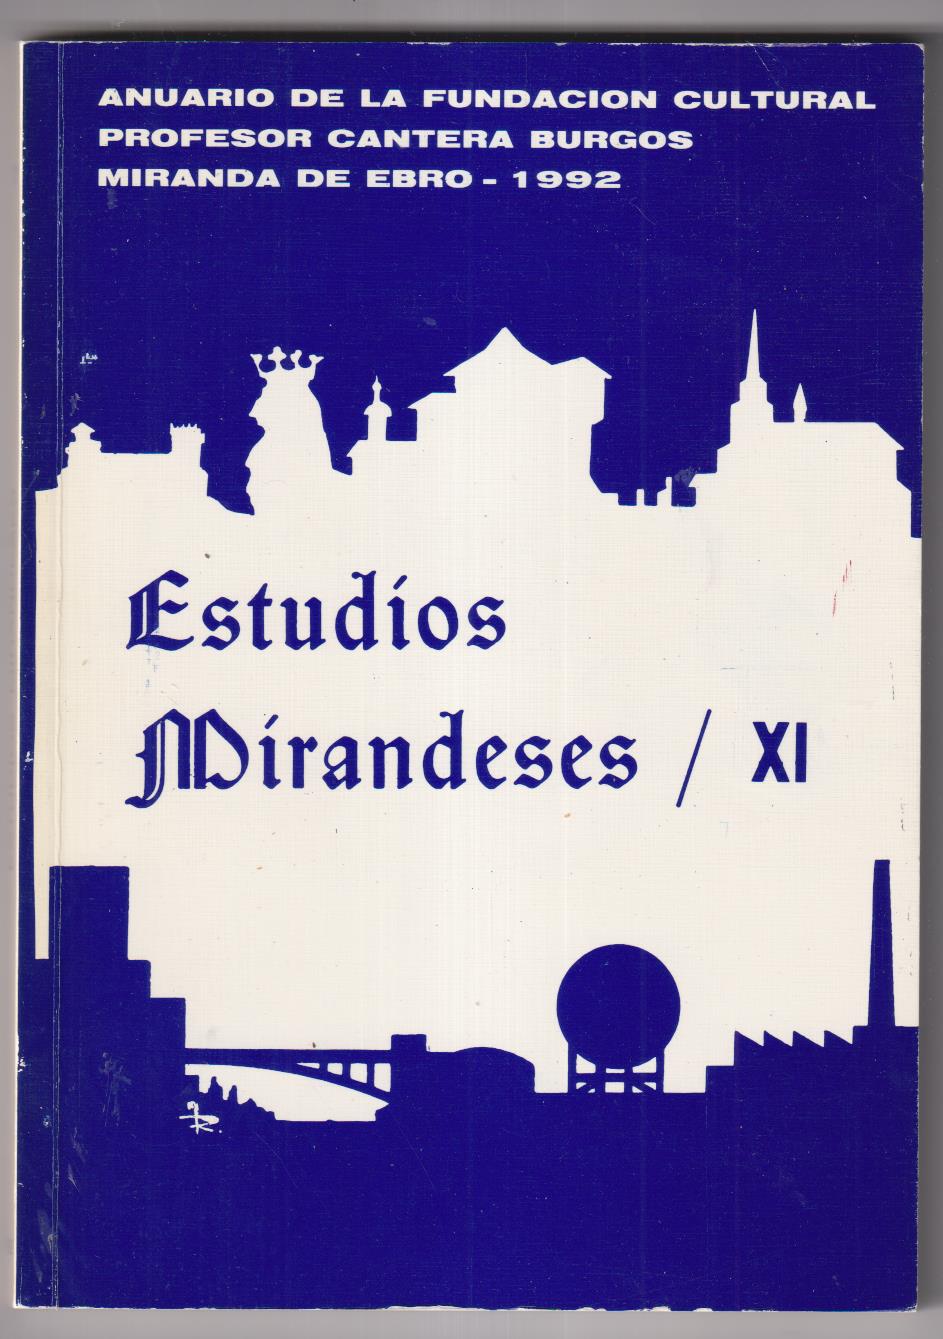 Estudios Mirandeses XI. Miranda de Ebro 1992